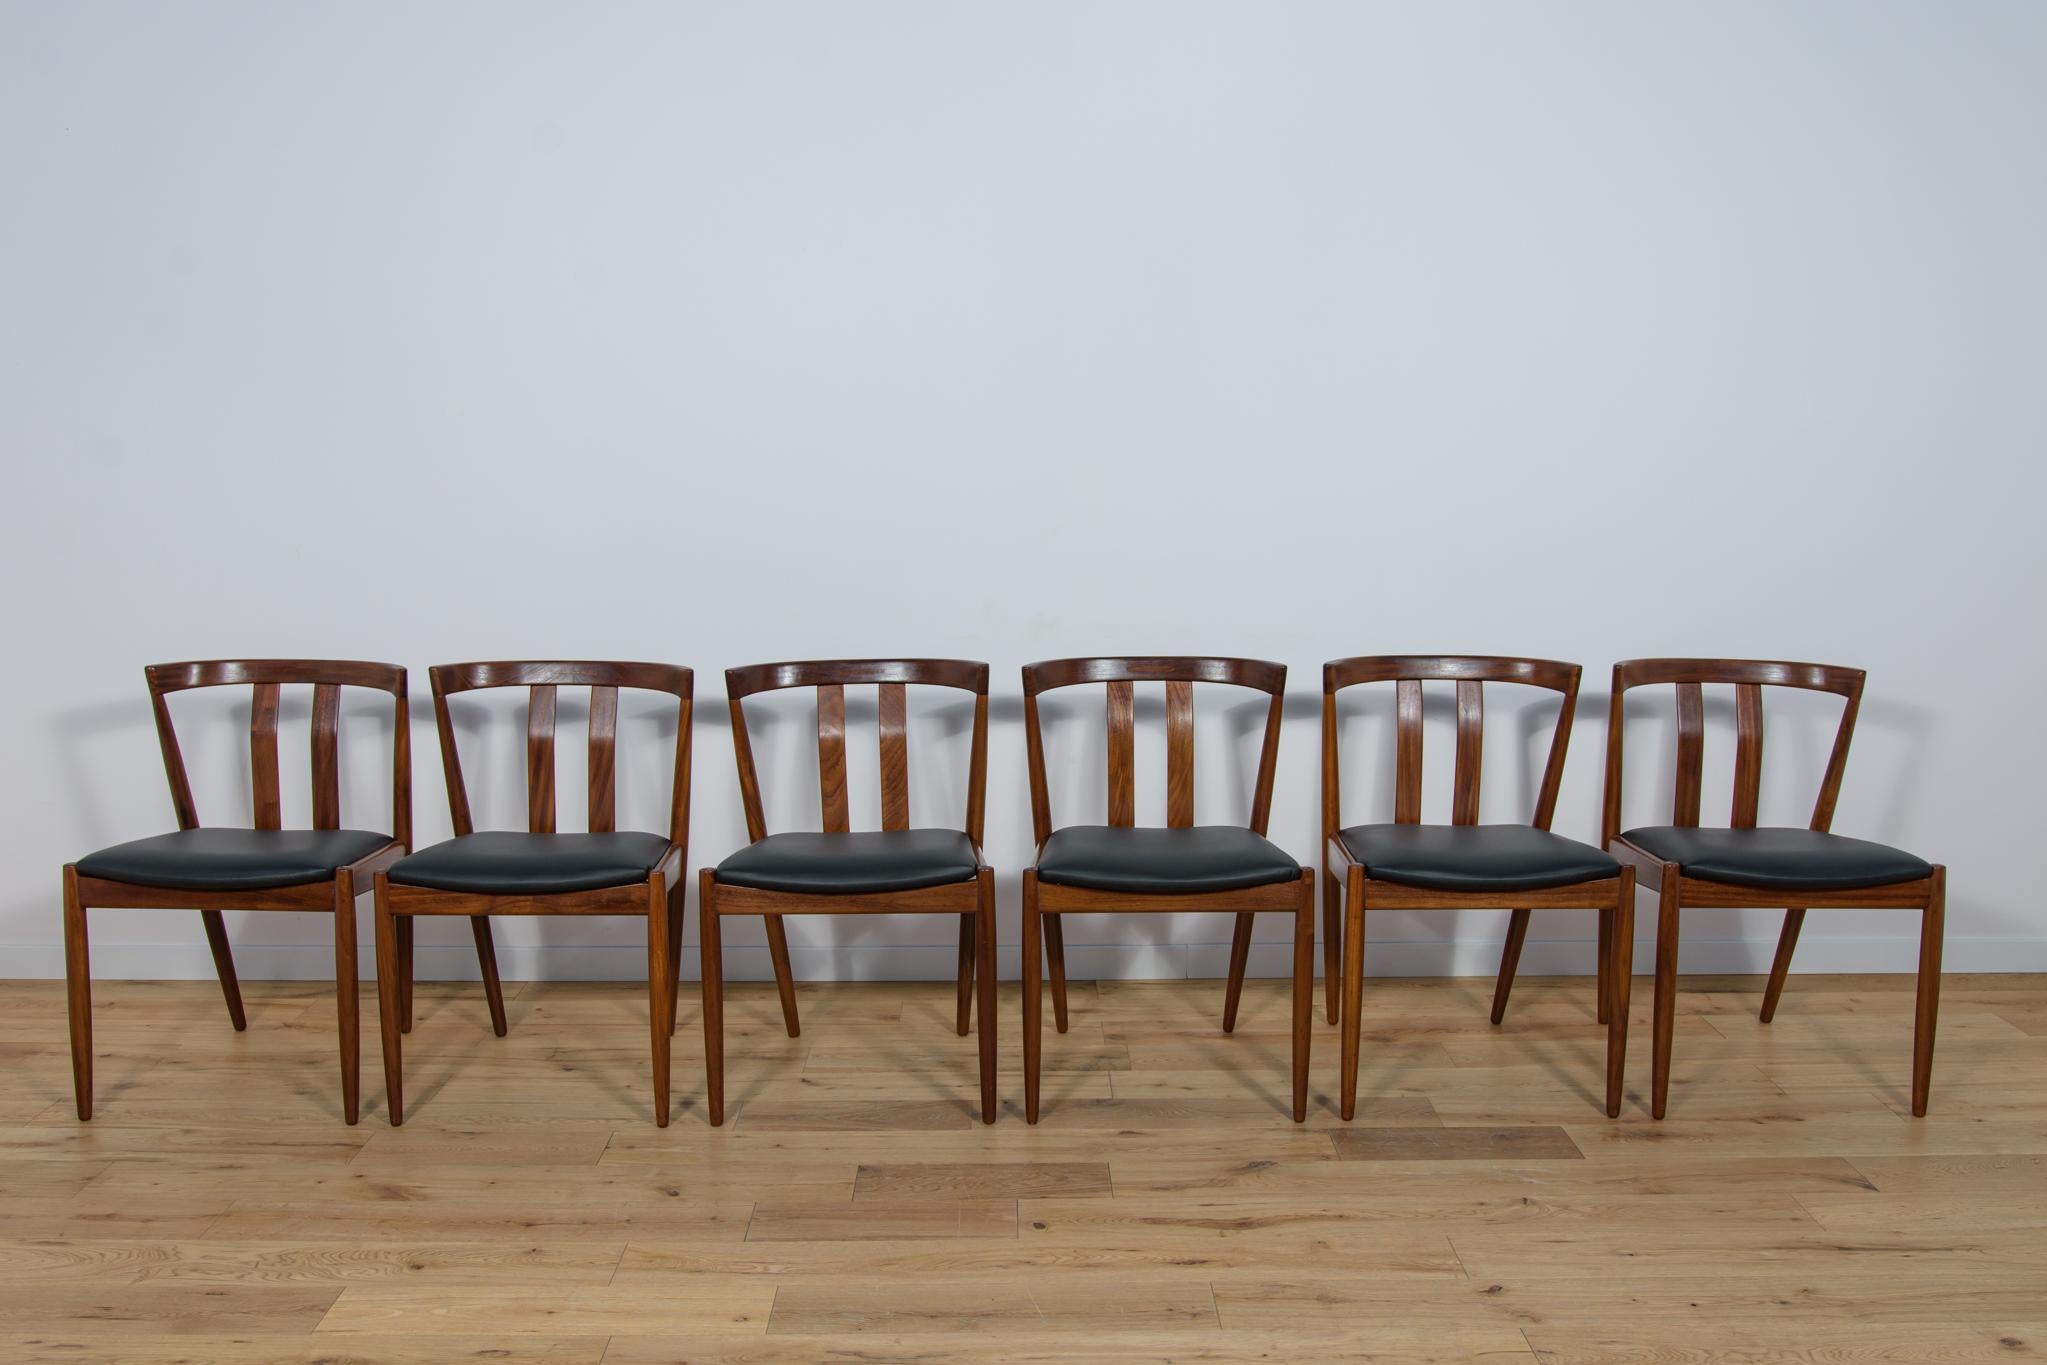 
Cet ensemble de six chaises a été produit au Danemark dans les années 1960. Les chaises sont en teck. Un meuble au design raffiné associé à une haute qualité artisanale des éléments de menuiserie. En témoigne la conception du dossier et des pieds